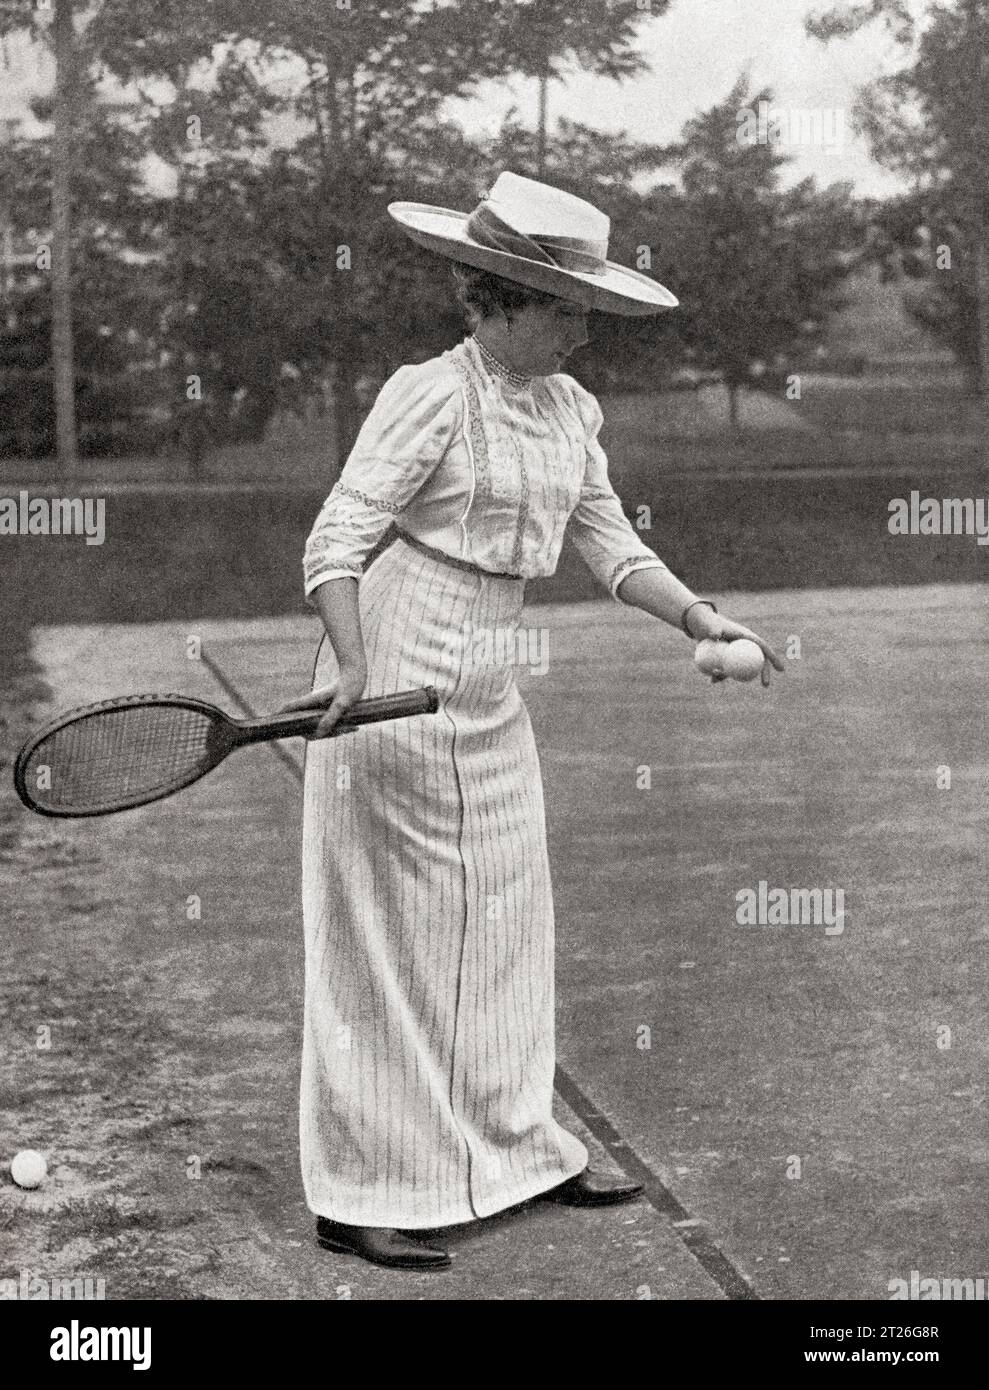 Königin Victoria von Spanien, hier beim Tennis im Palacio de Las Fraguas zu sehen. Victoria Eugenie von Battenberg, 1887–1969. Königin von Spanien als Ehefrau von König Alfonso XIII. Aus Mundo Grafico, veröffentlicht 1912. Stockfoto